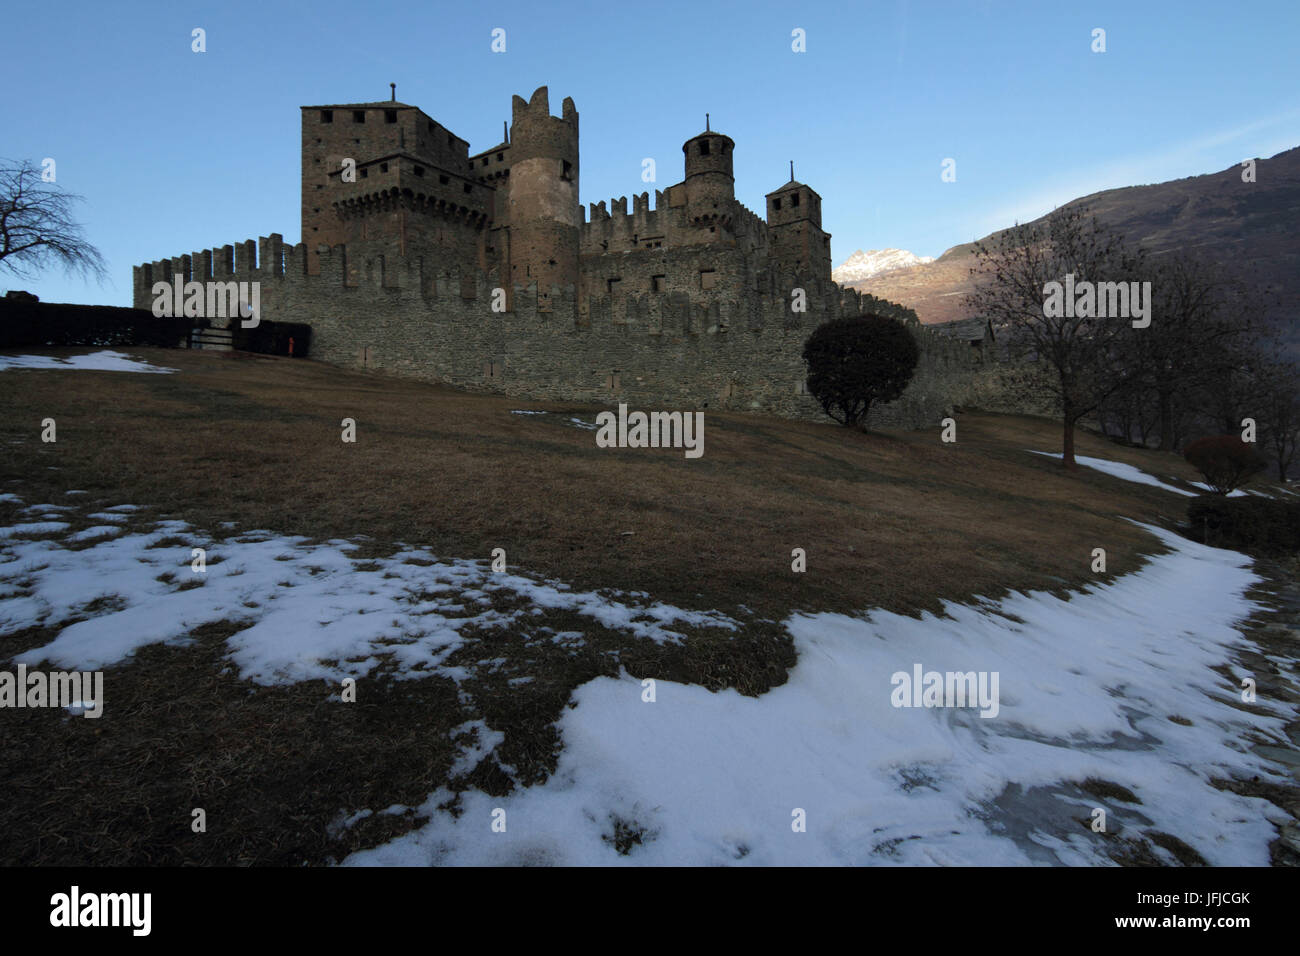 Il Castello di Fenis, perfettamente conservato con la sua parete e torri, si trova in Valle d'Aosta, Italia Foto Stock